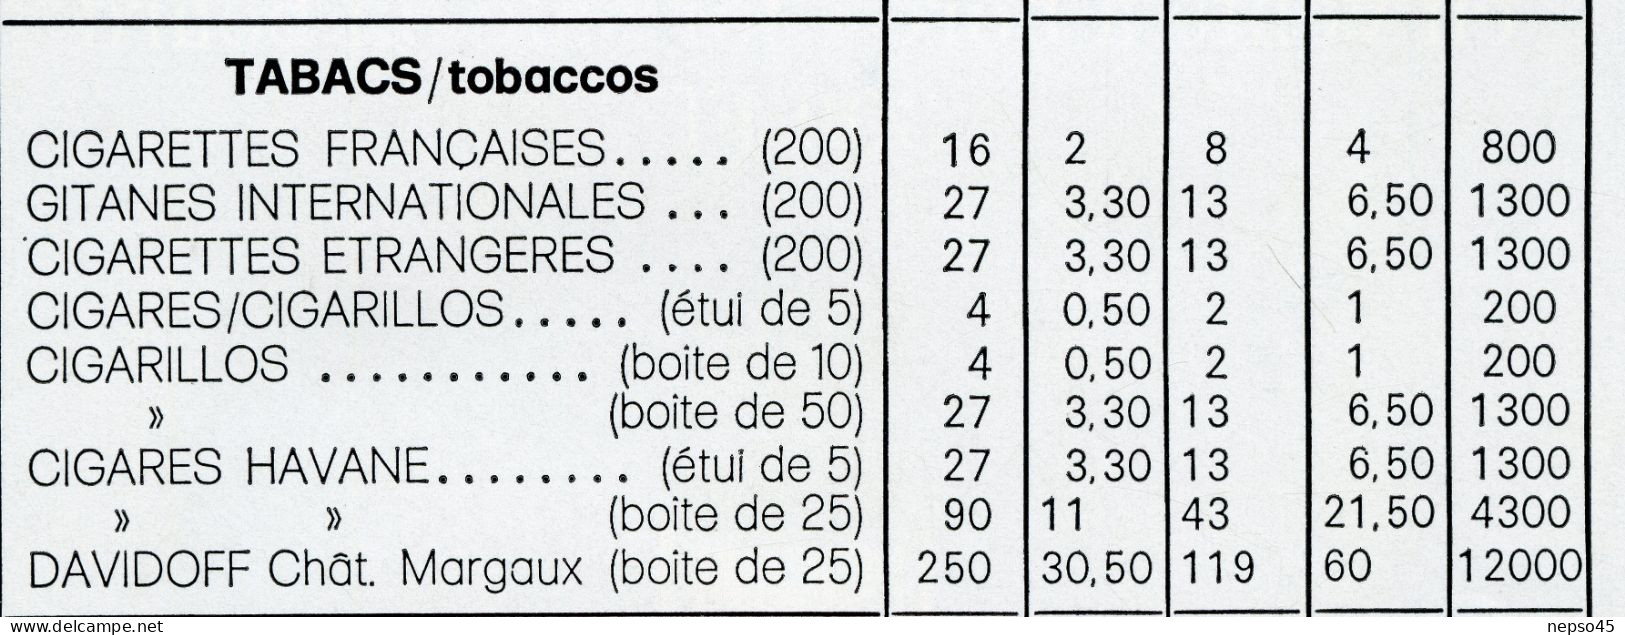 Air France.Tarif Des Prix à Bord.Articles De Paris.Tabacs.Boissons.Montre Richerds-Zeger Double Cadrans Fuseaux Horaires - Publicités